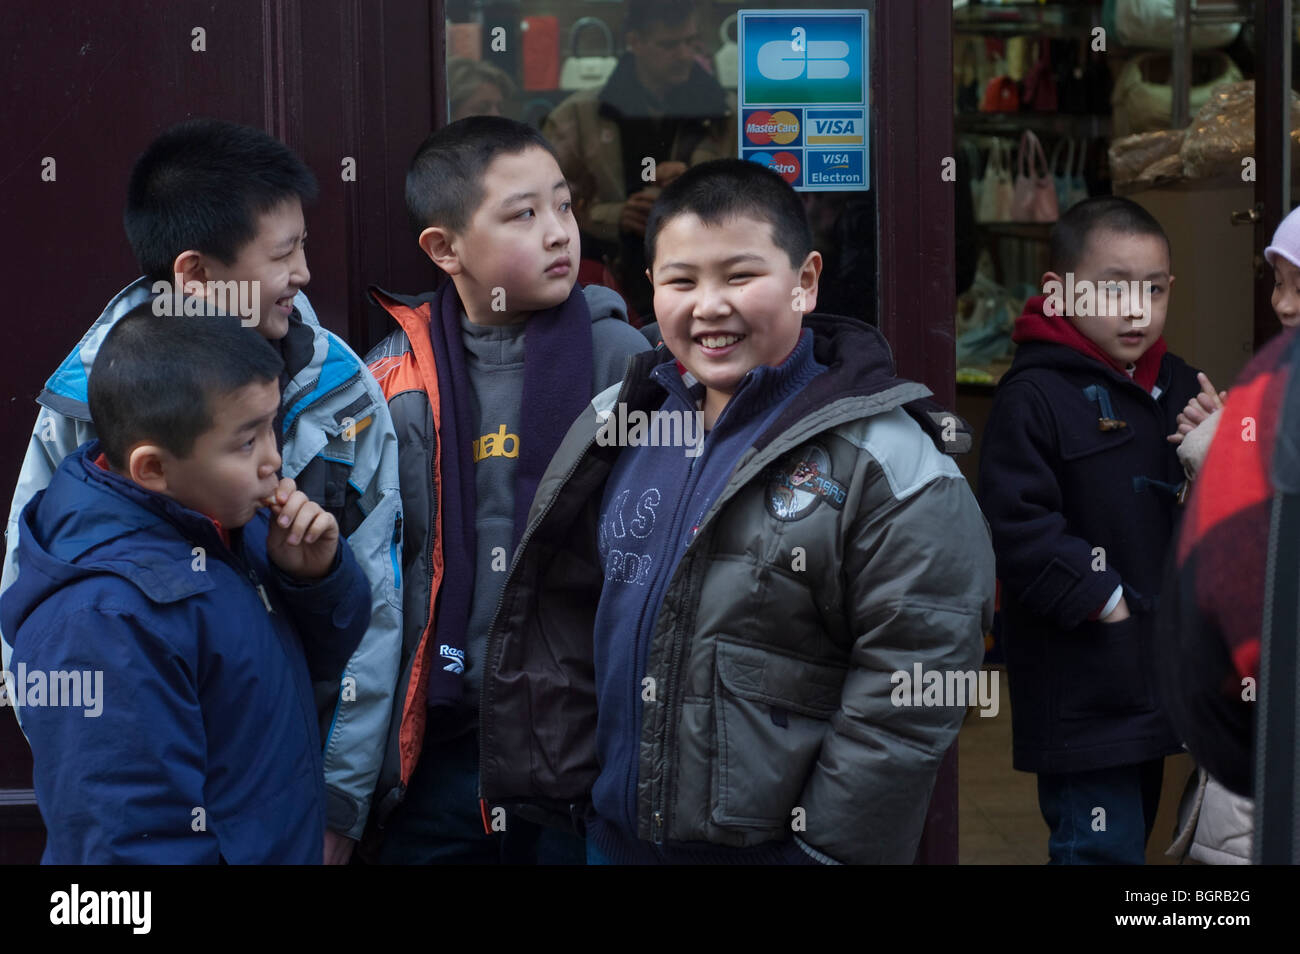 Paris, France, scène de rue, Chinatown, jeunes enfants asiatiques aux célébrations du nouvel an chinois, famille minoritaire d'immigrants Banque D'Images